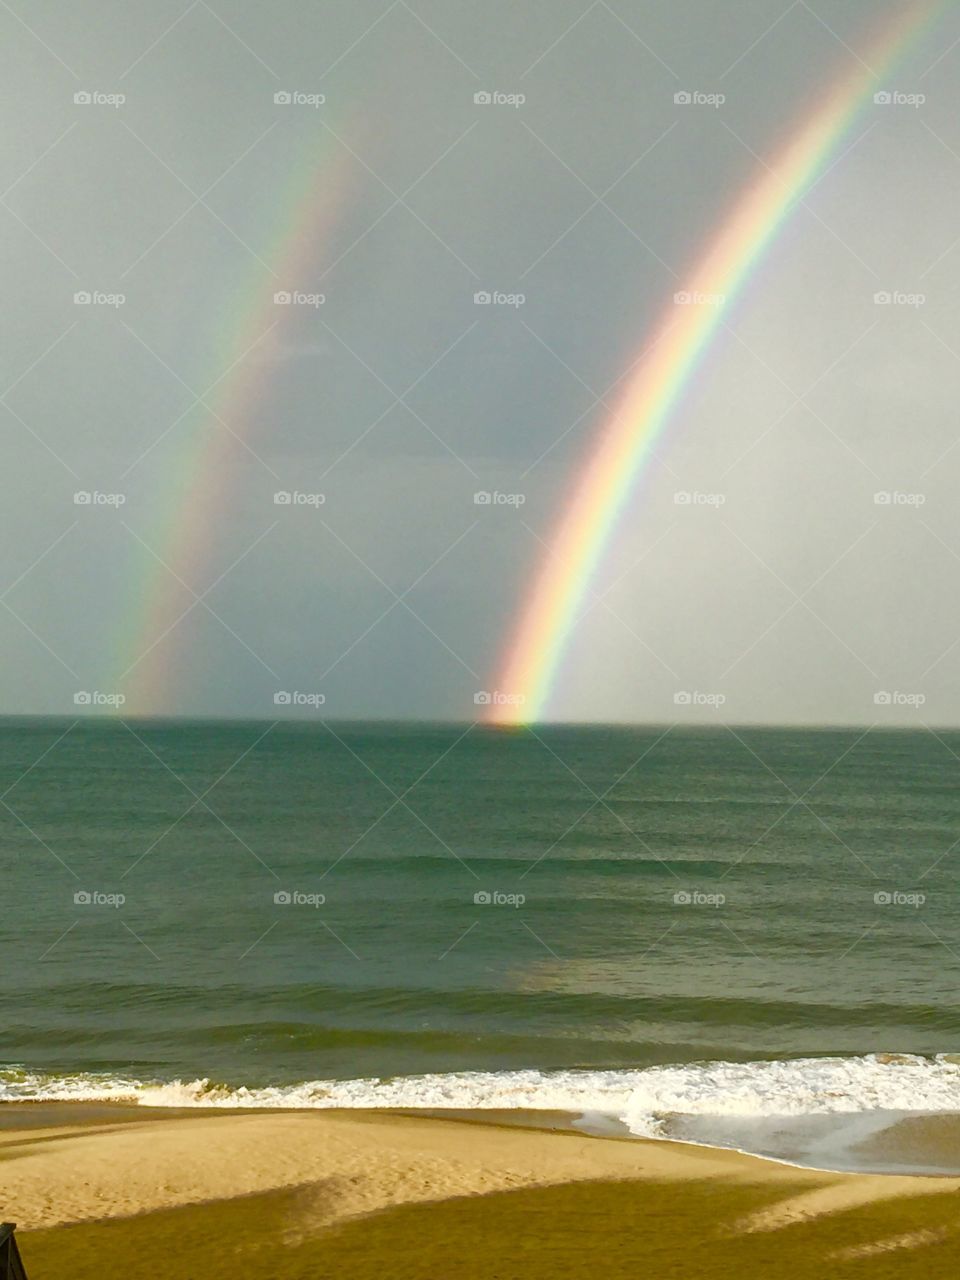 Double rainbow over the ocean